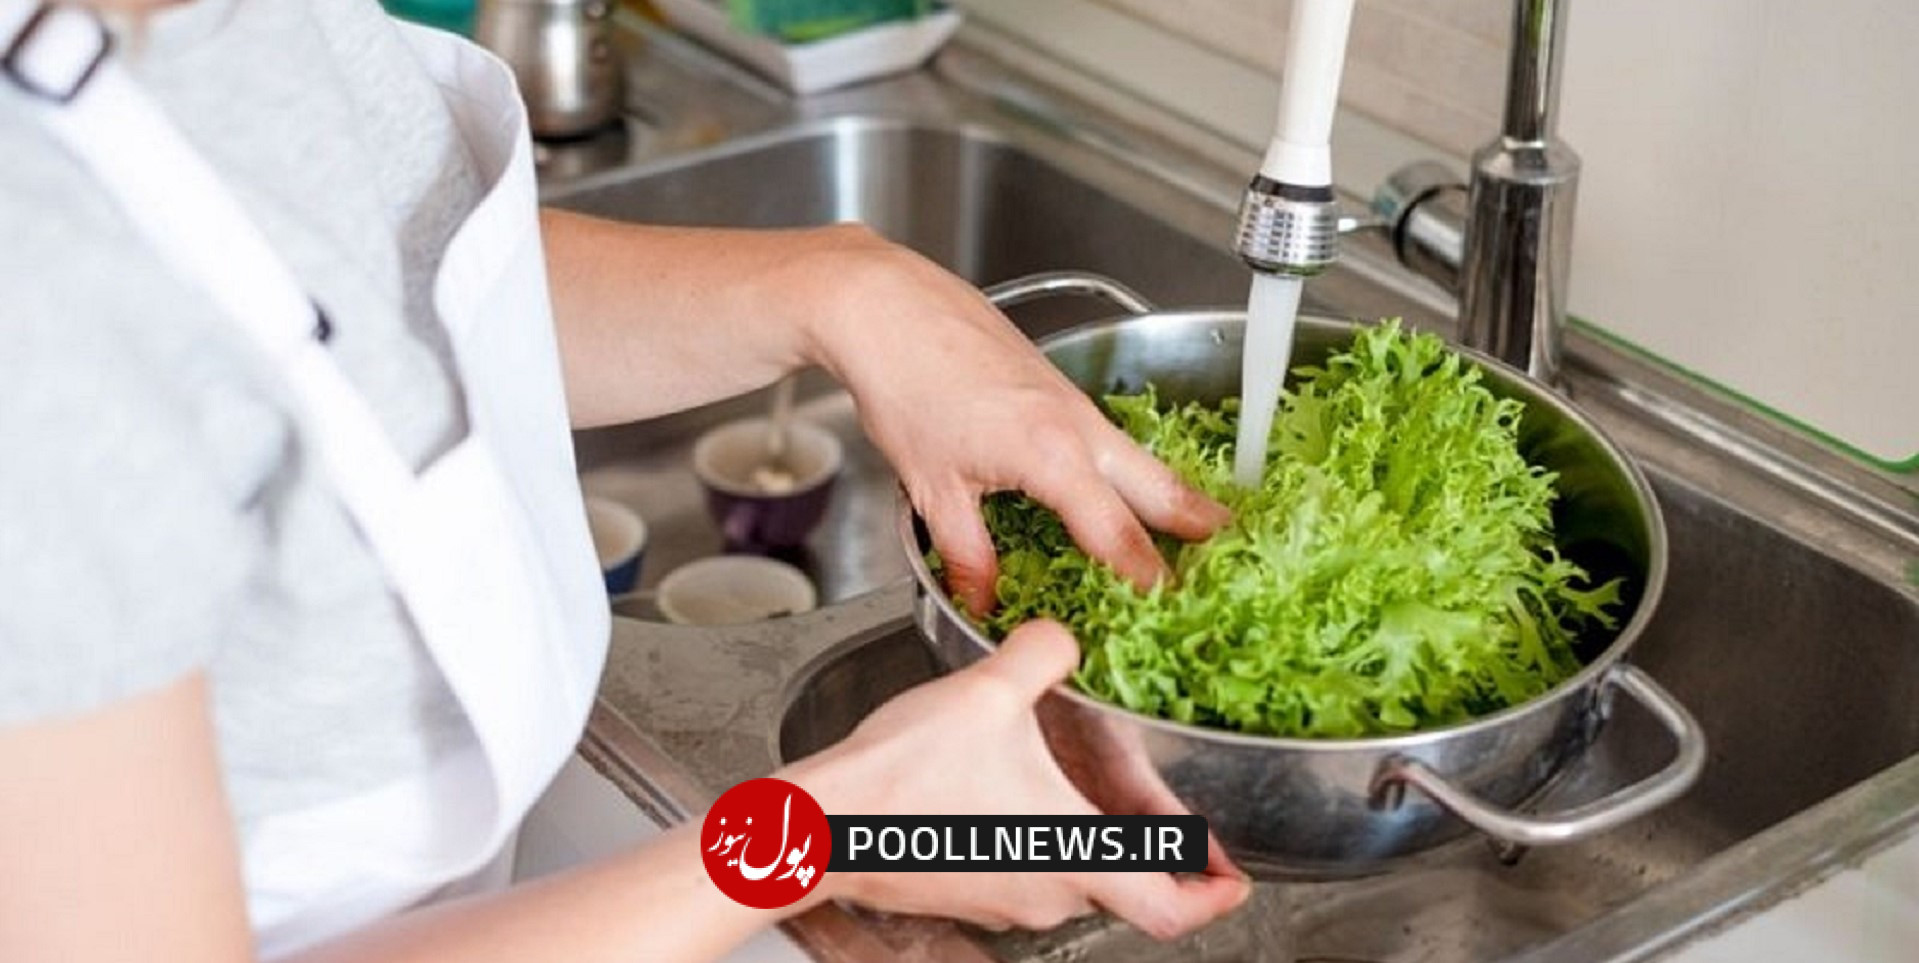 شستن کاهو - ضد عفونی کردن سبزی و میوه